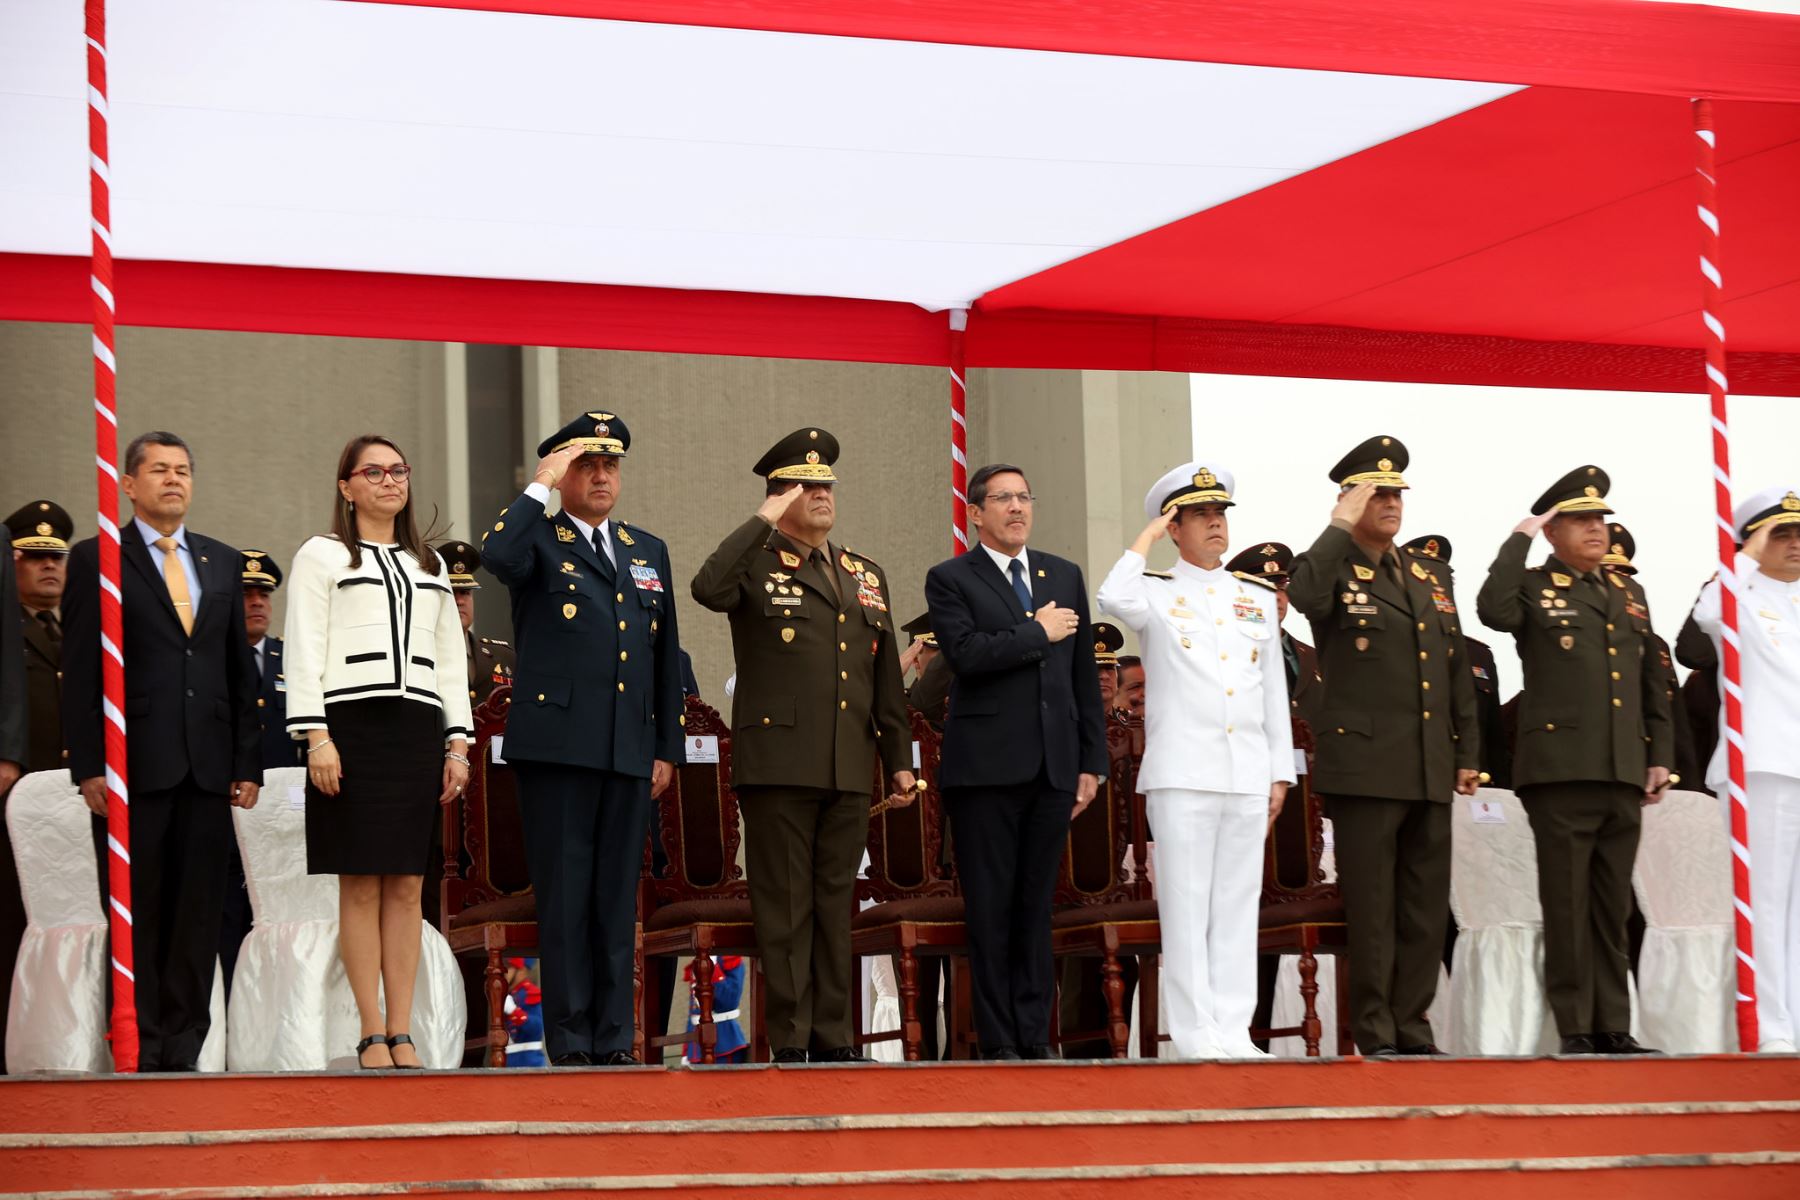 En el Cuartel General del Ejercito del Perú, el ministro Jorge Chávez Cresta preside la Ceremonia de Imposición del Cintillo de Operaciones de Paz al Personal Militar Desplegado en Misiones de Paz en el marco del Día Internacional del Personal de Paz de las Naciones Unidas.
Foto: ANDINA/Mindef